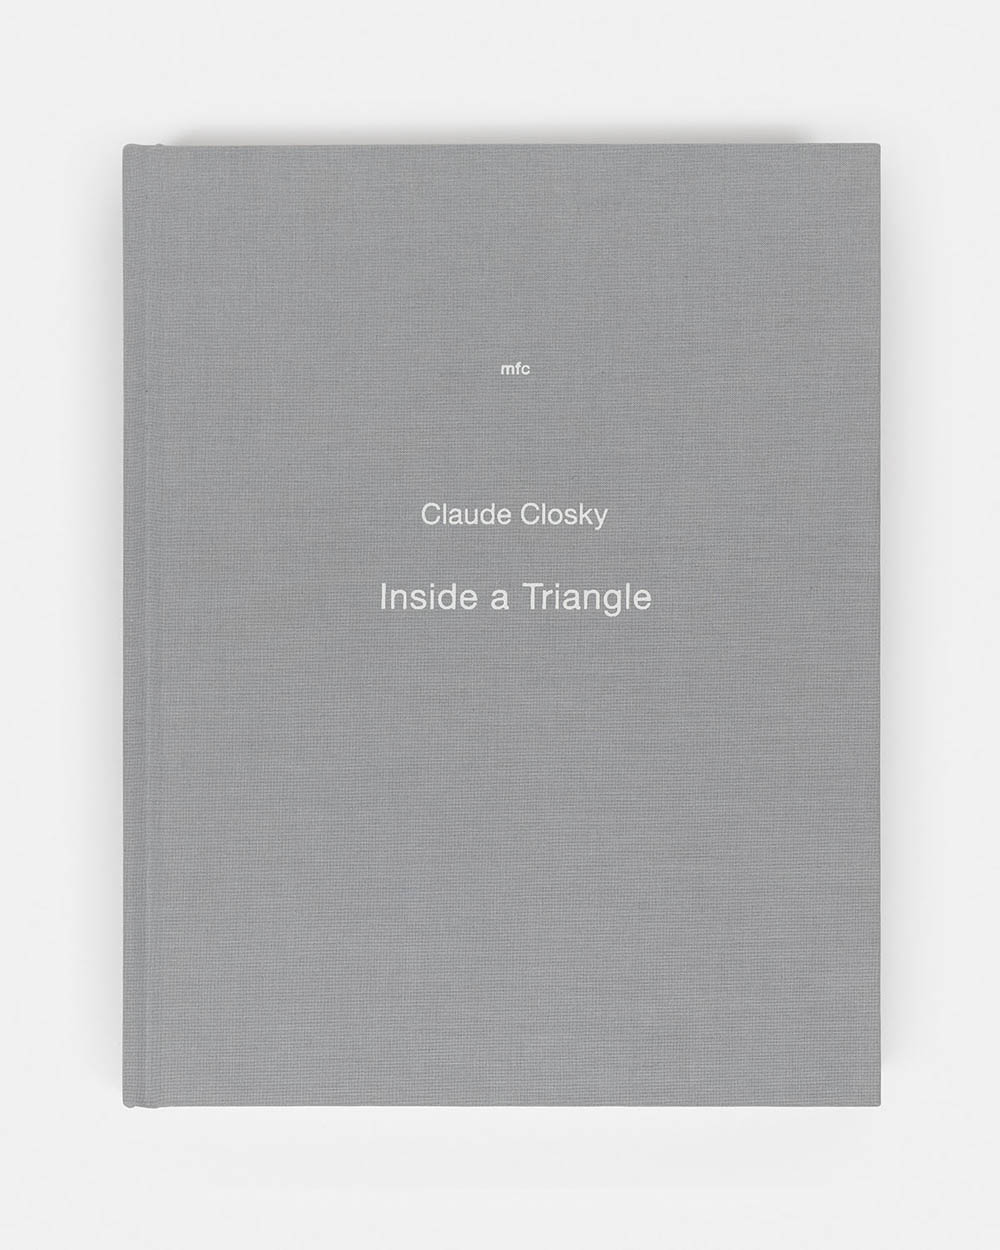 Claude Closky - Inside a Triangle, 2011